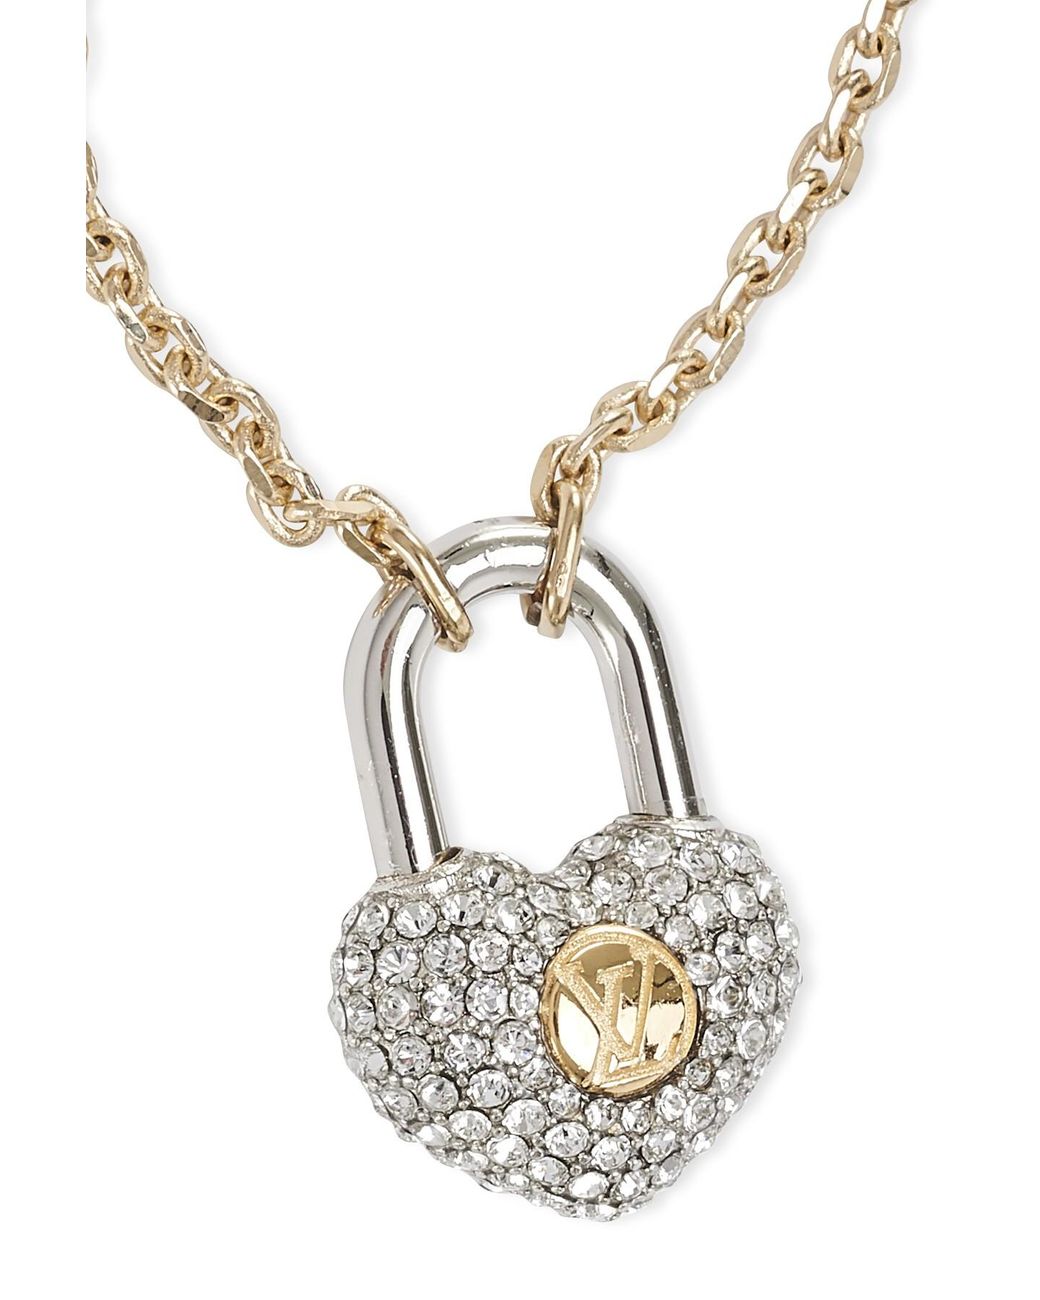 Louis Vuitton Crazy in Lock Bracelet Gold Brass